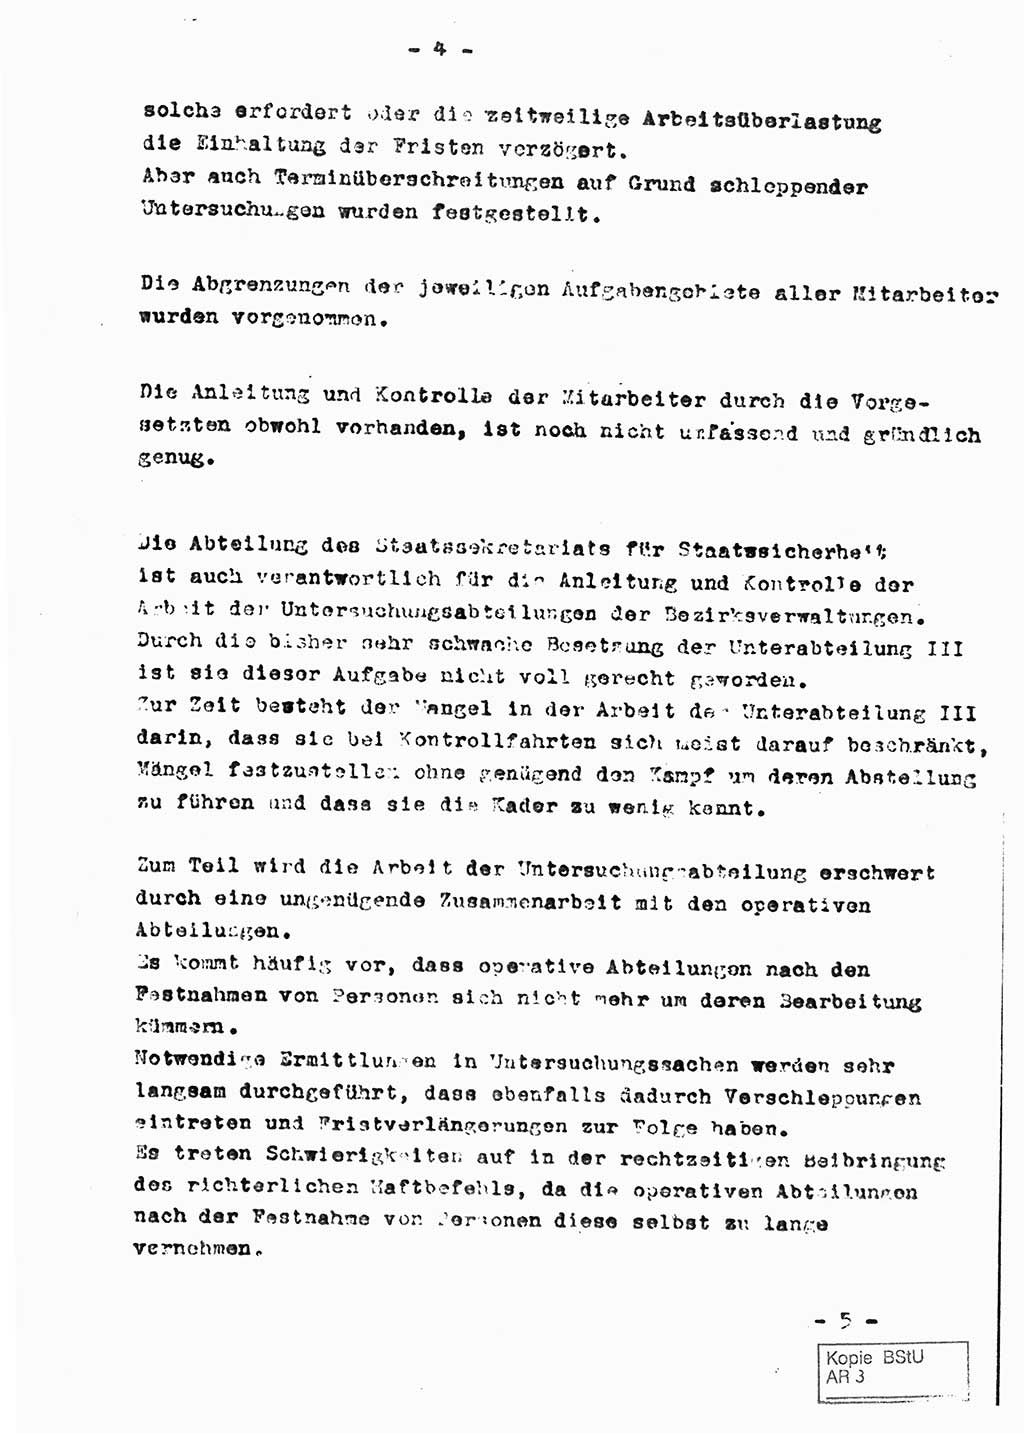 Staatssekretariat für Staatssicherheit (SfS) [Deutsche Demokratische Republik (DDR)], Abteilung (Abt.) Ⅸ, Berlin 1953, Seite 4 (Ber. SfS DDR Abt. Ⅸ /53 1953, S. 4)